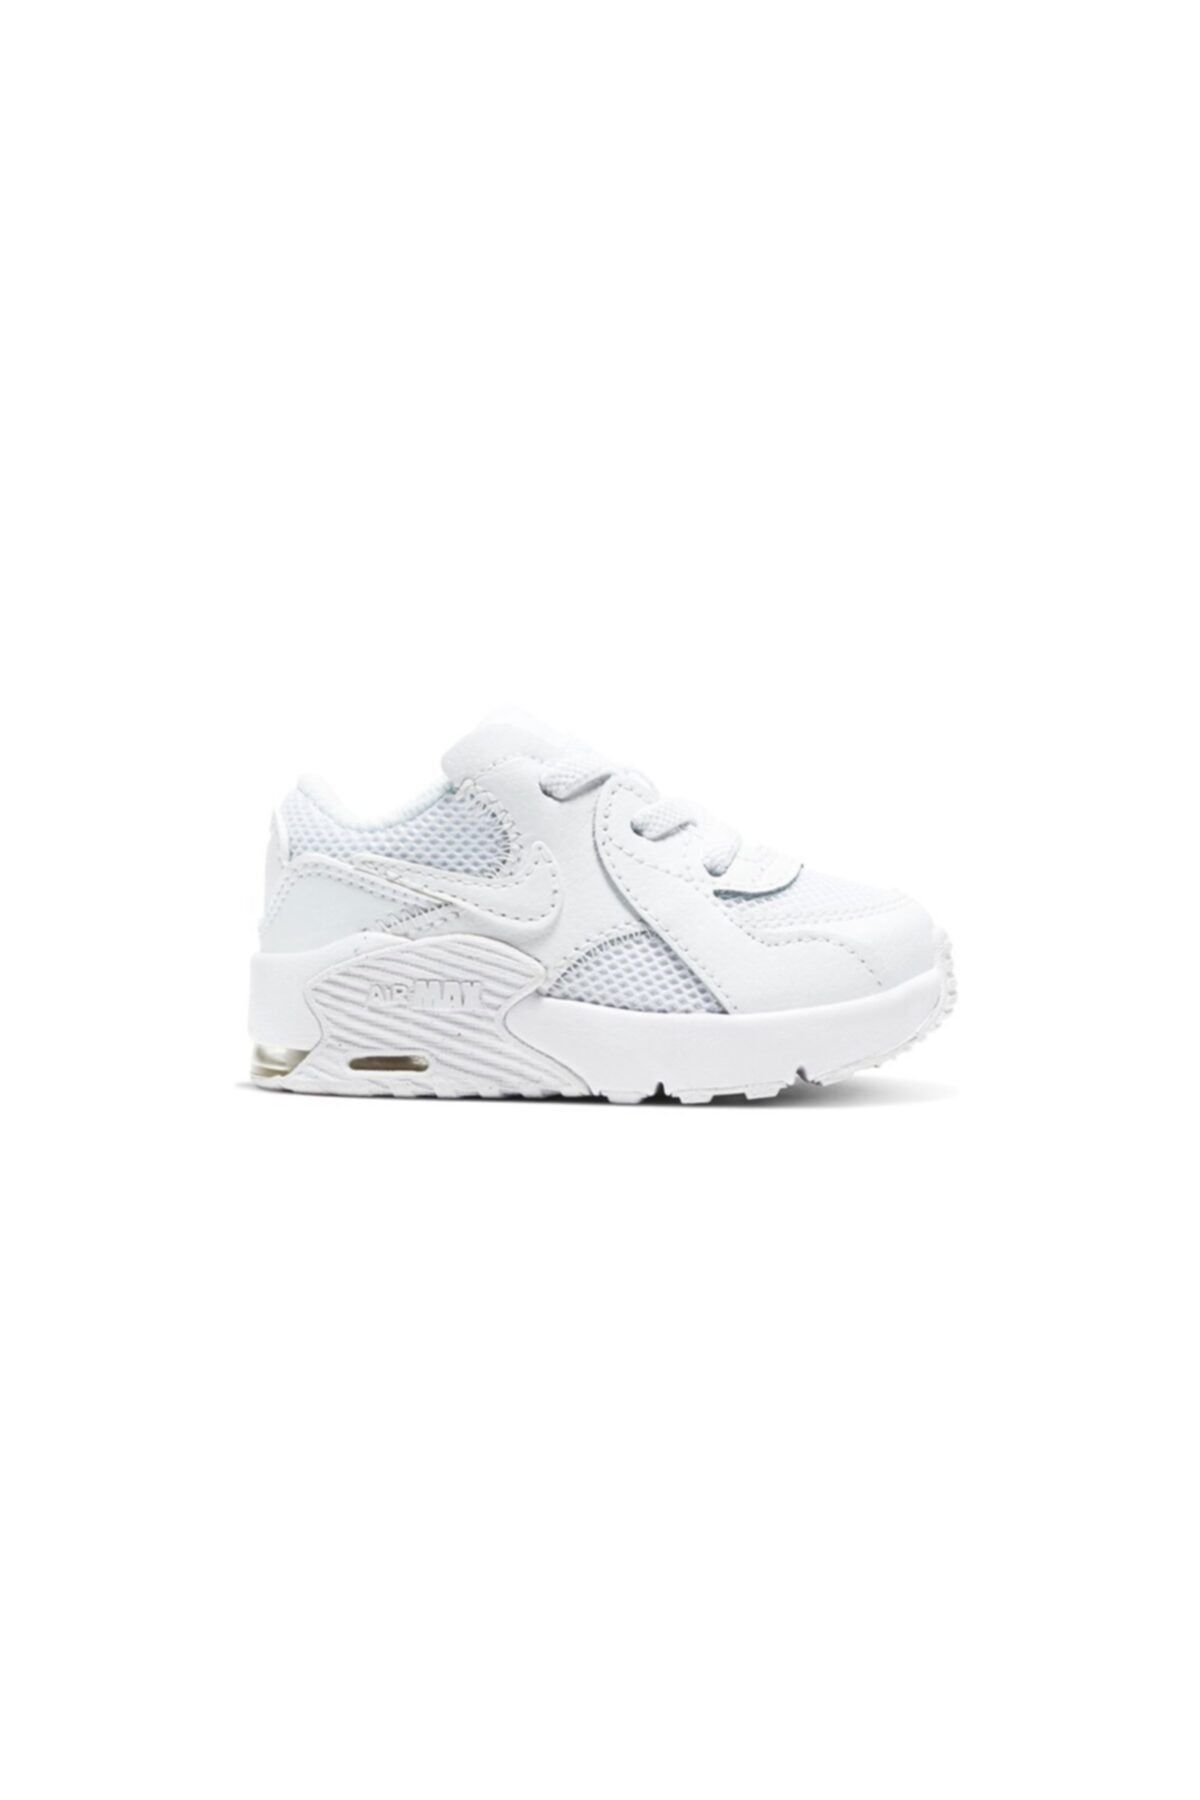 Nike Aır Max Excee Çocuk Beyaz Koşu Ayakkabı Cd6893-100